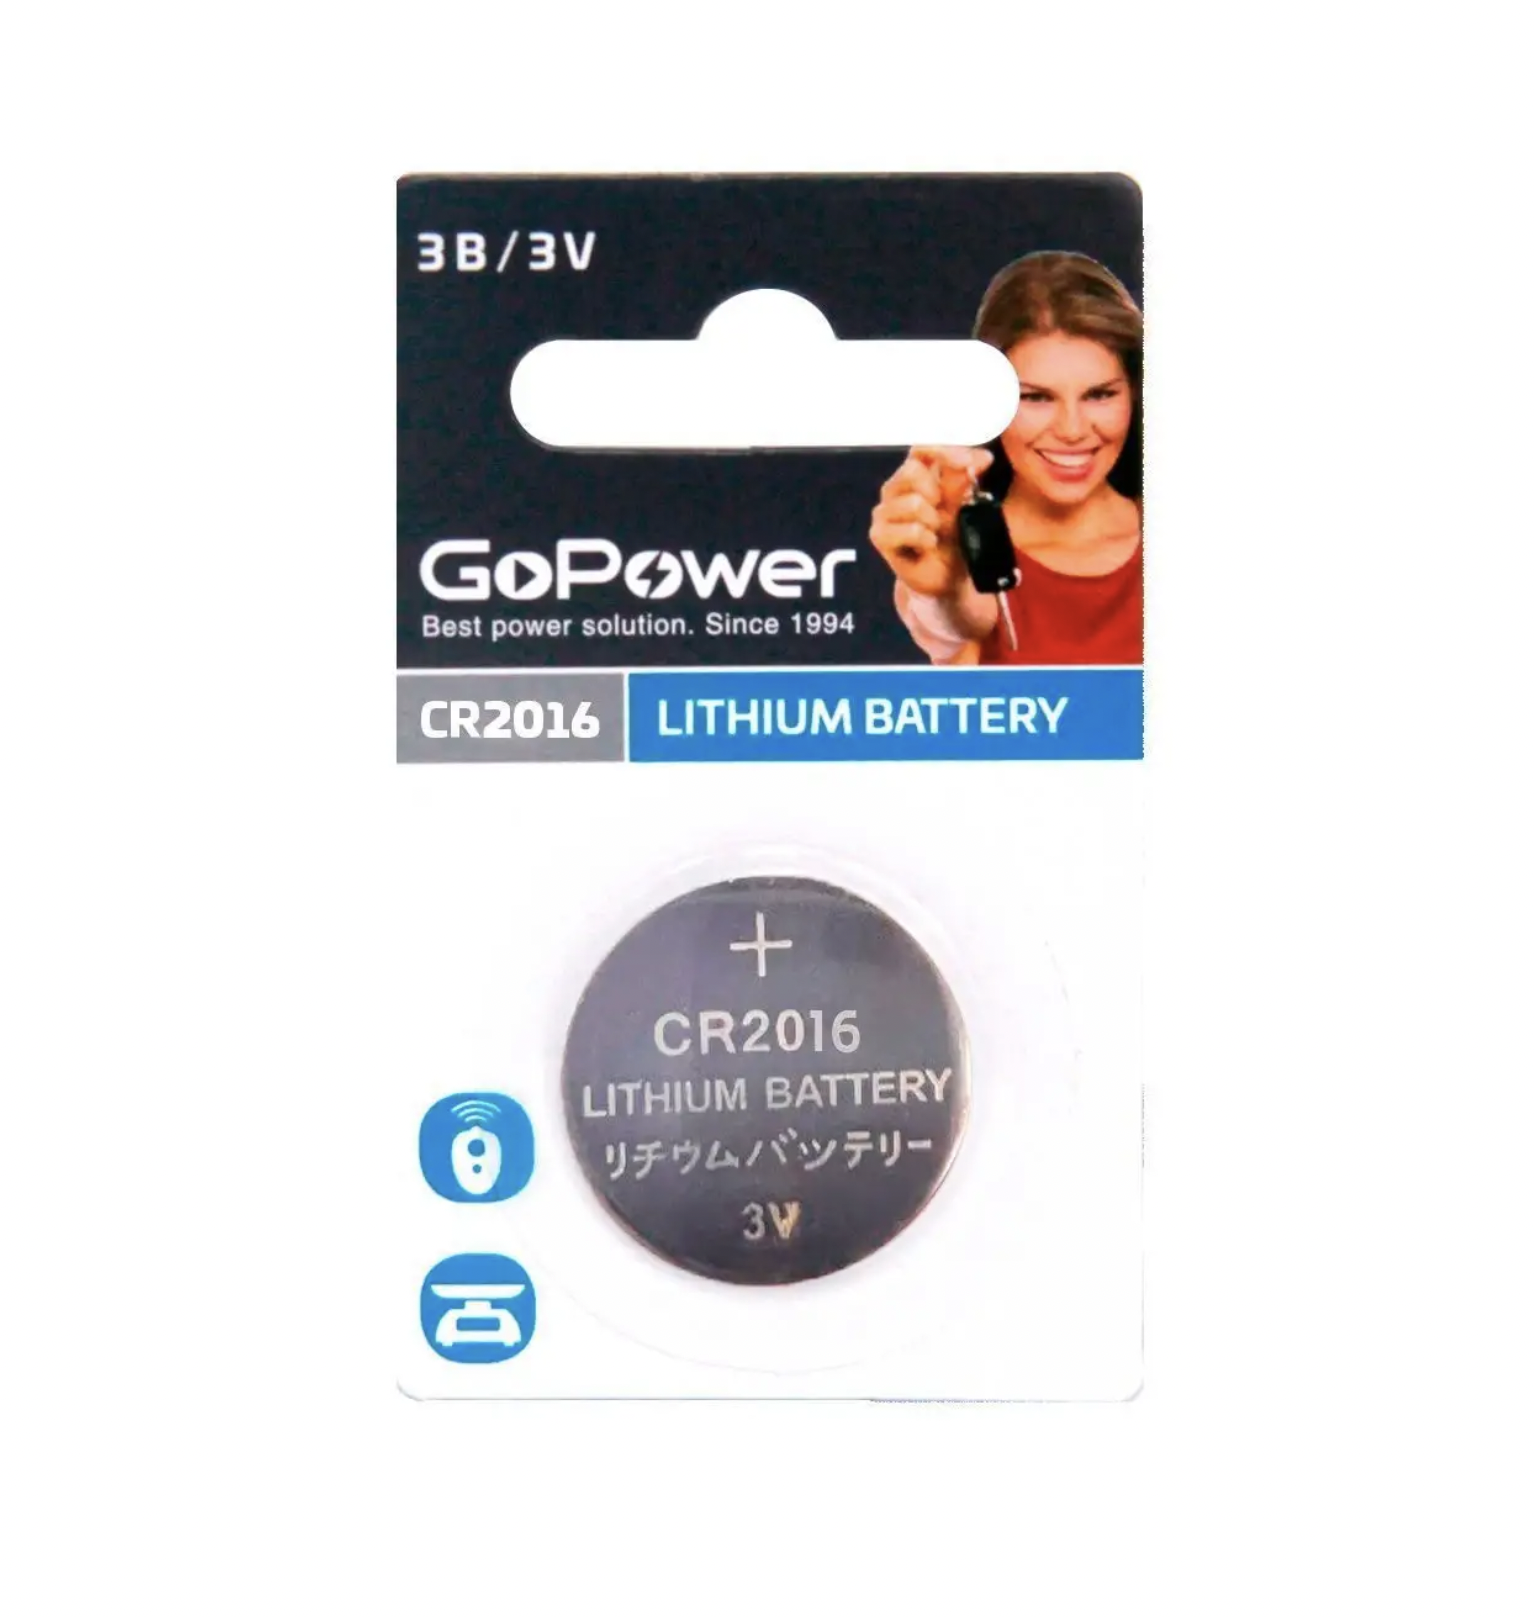    / Go Power -  Lithium Battery CR2016 3V 1 